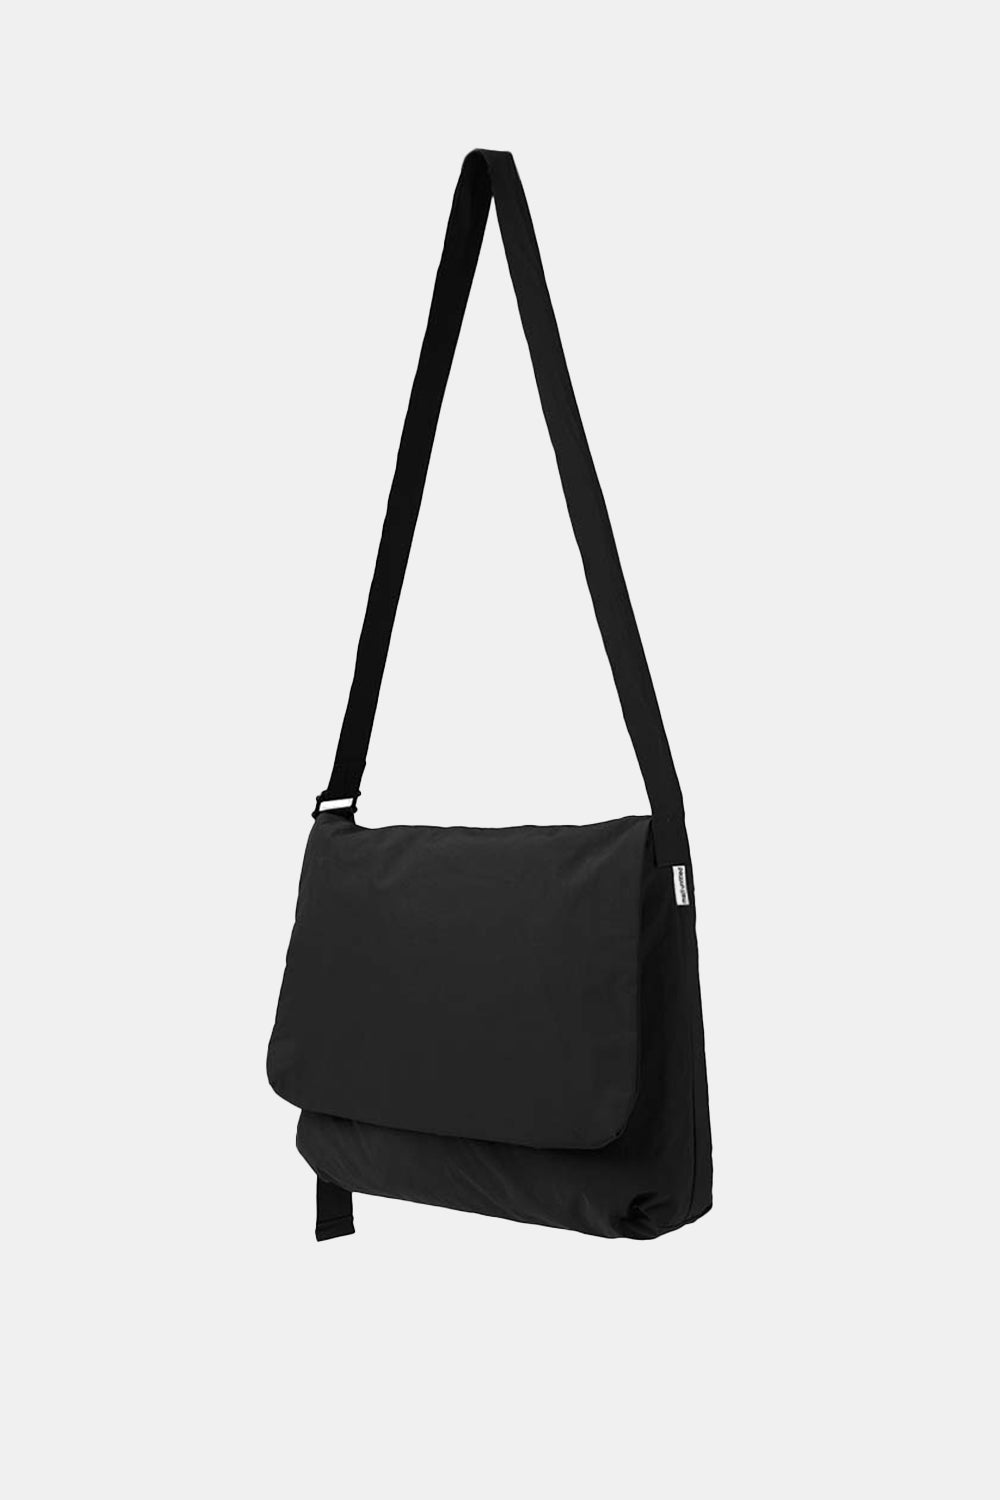 Mazi Post Bag (Black)